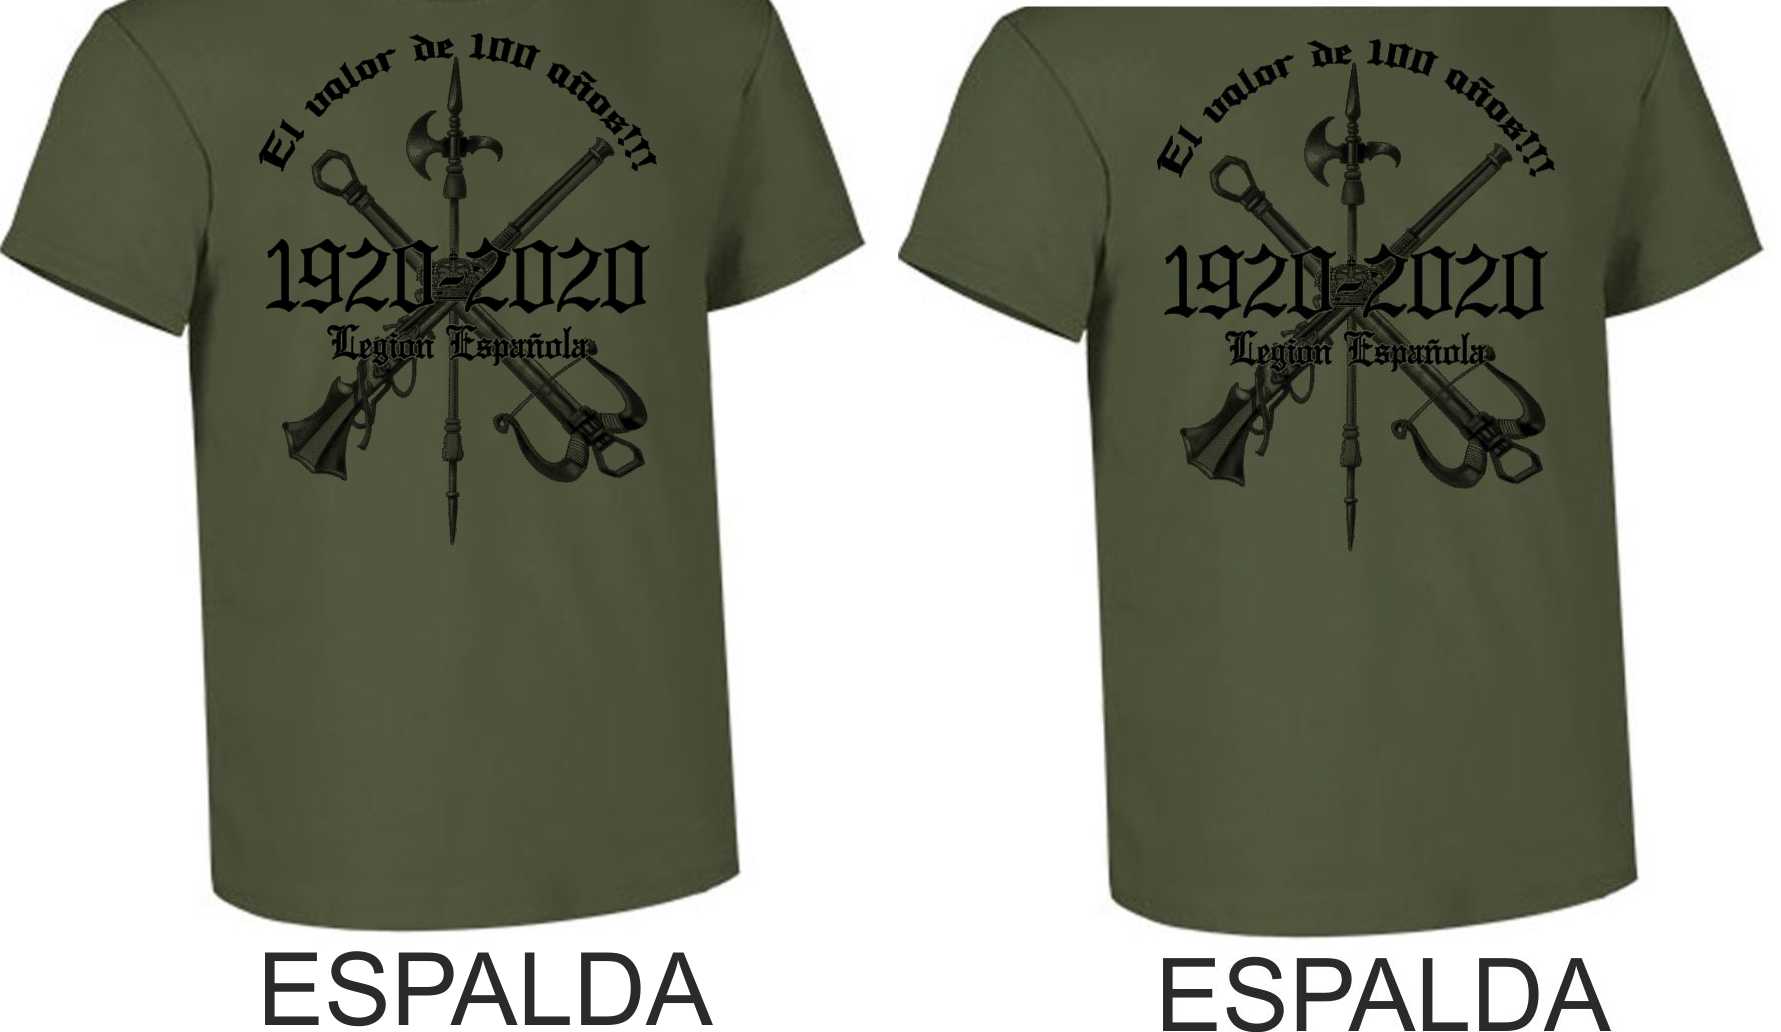 Camiseta Legión Española 100 años. "El valor de 100 años" Algodo